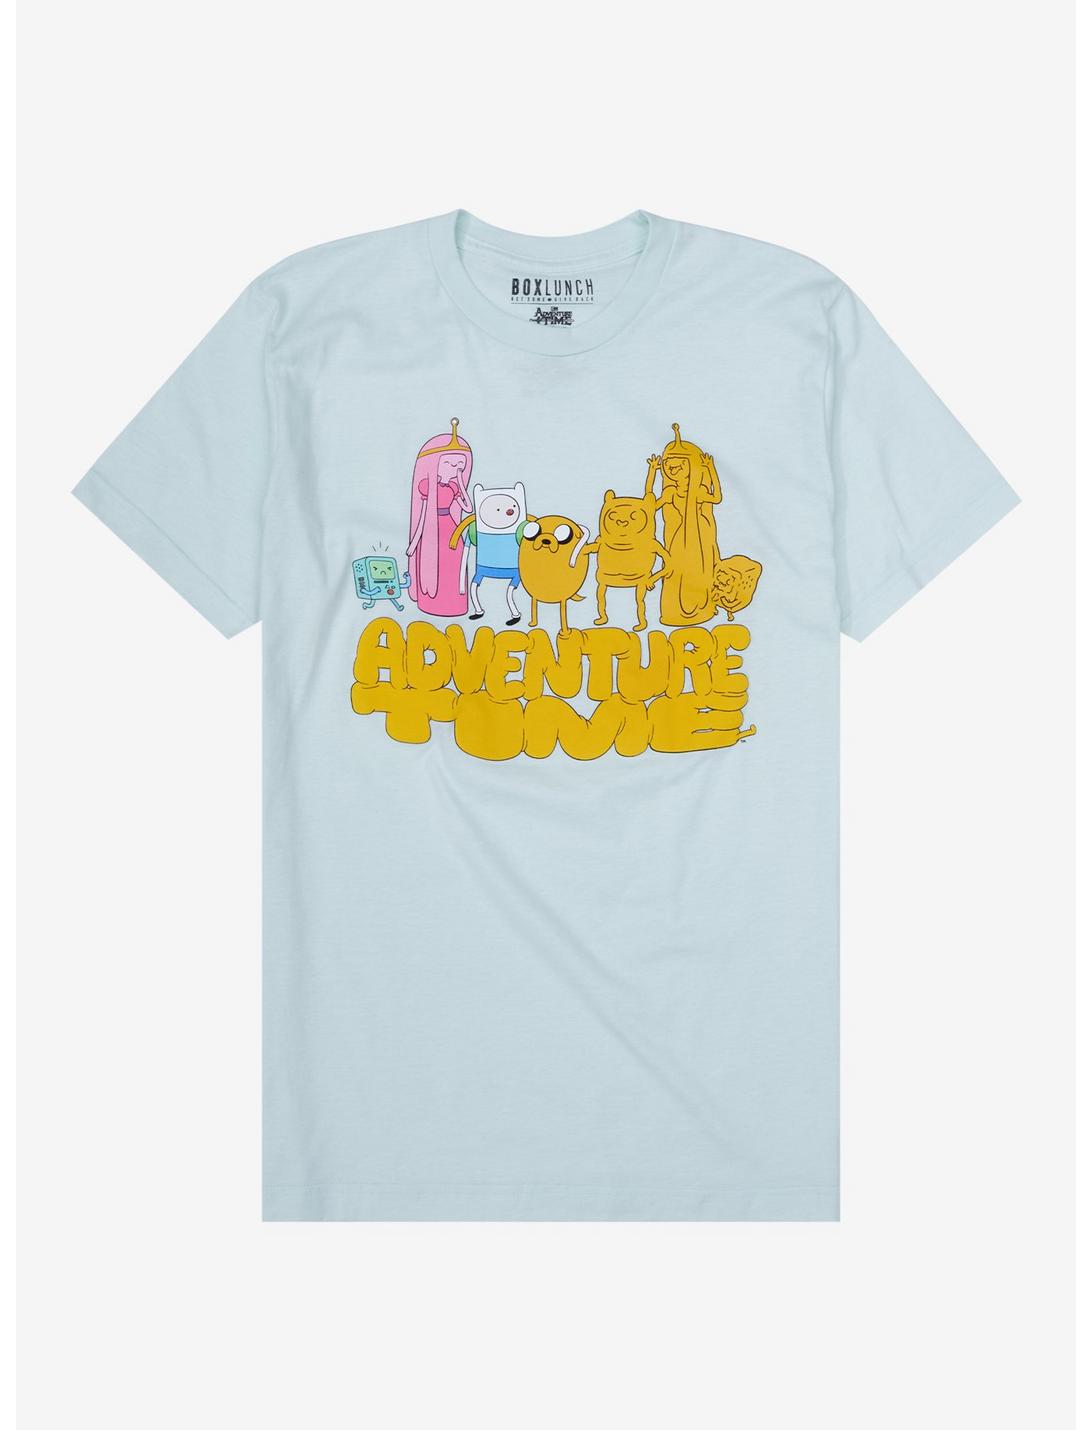 Adventure Time Group Portrait T-Shirt - BoxLunch Exclusive, MINT, hi-res